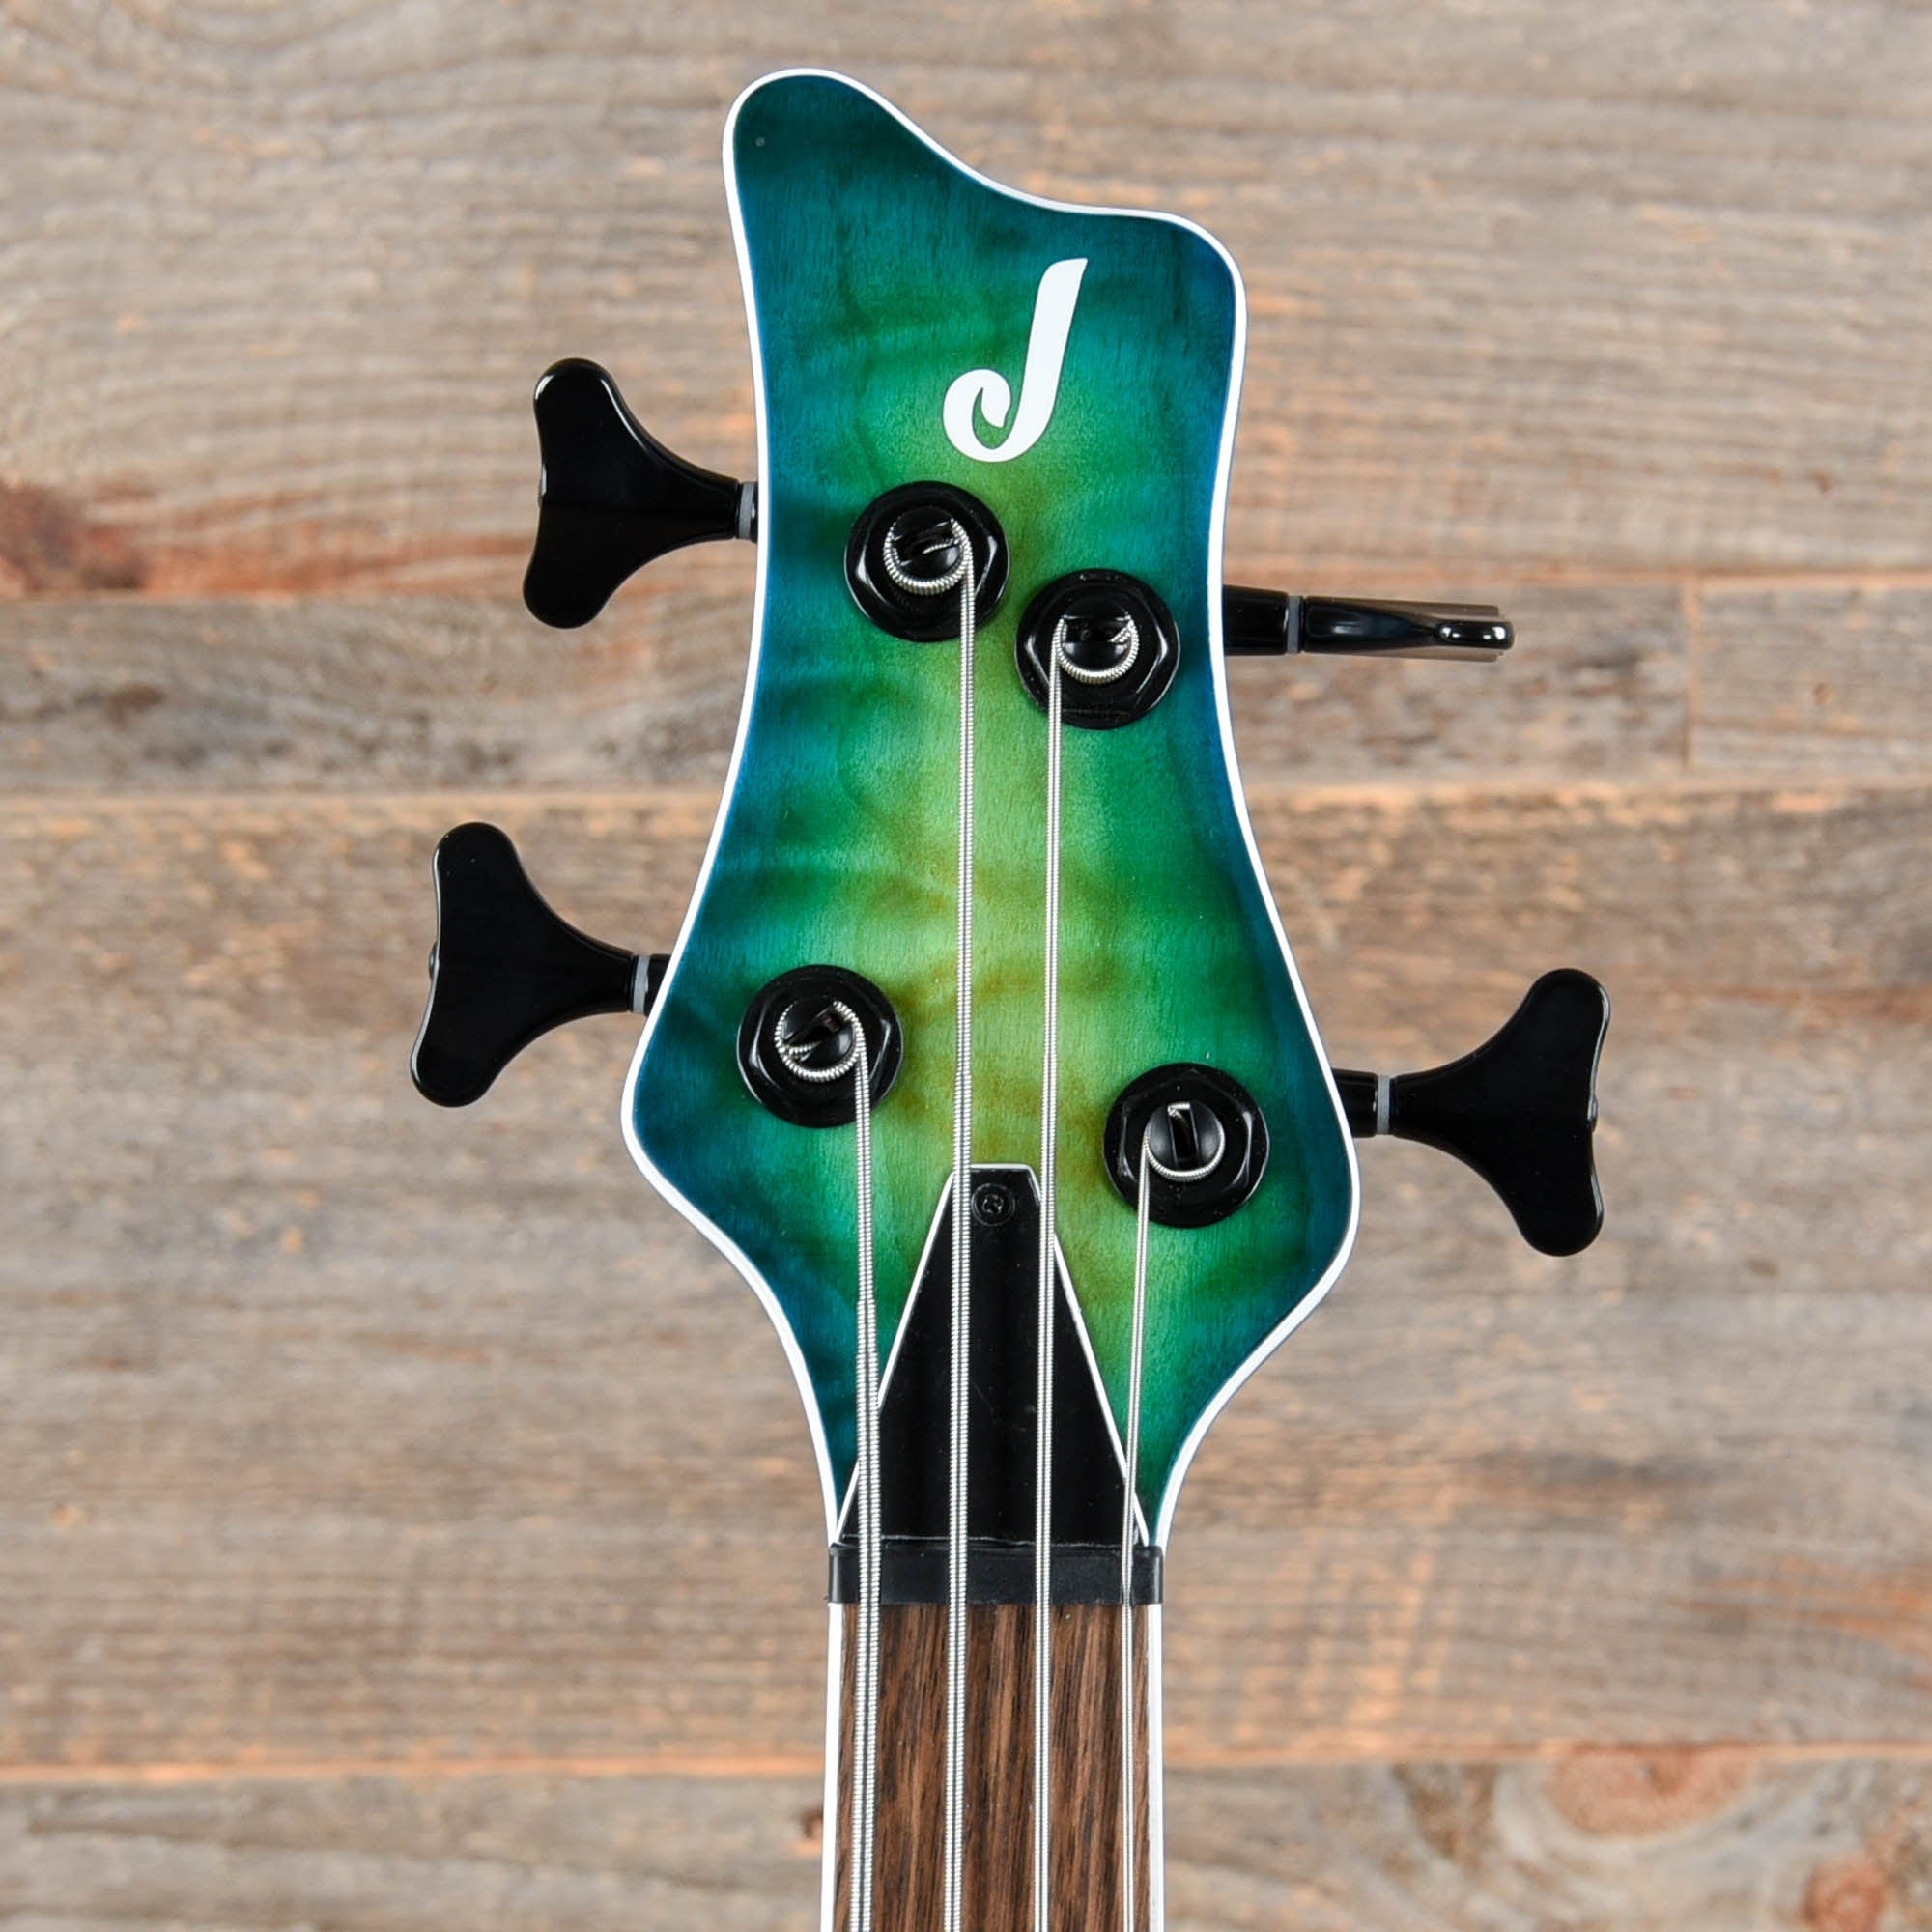 Jackson X Series Spectra Bass SBXQ IV Amber Blue Burst Bass Guitars / 4-String